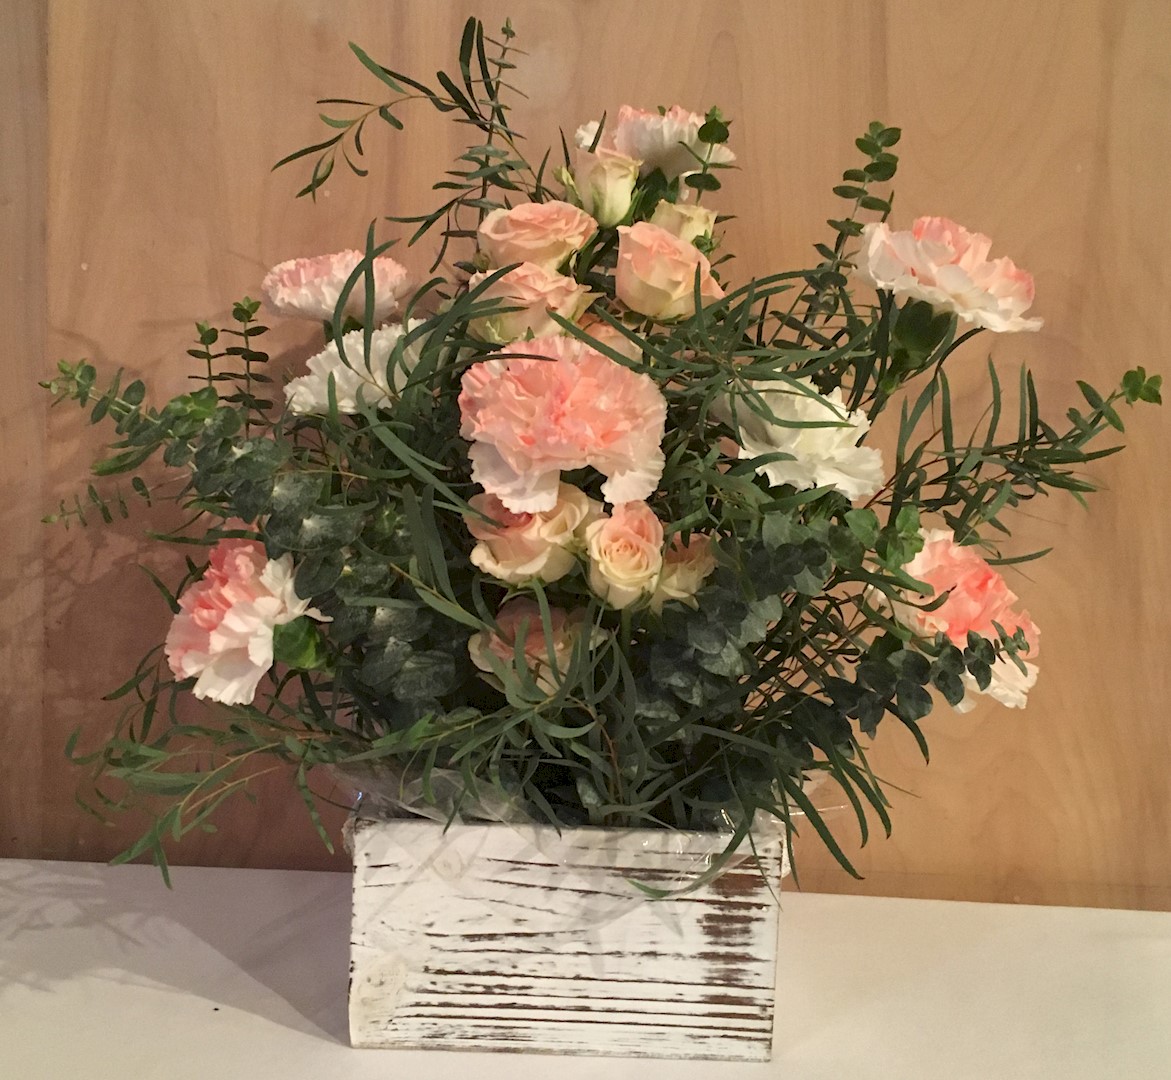 Flowers from Rachel Stevens